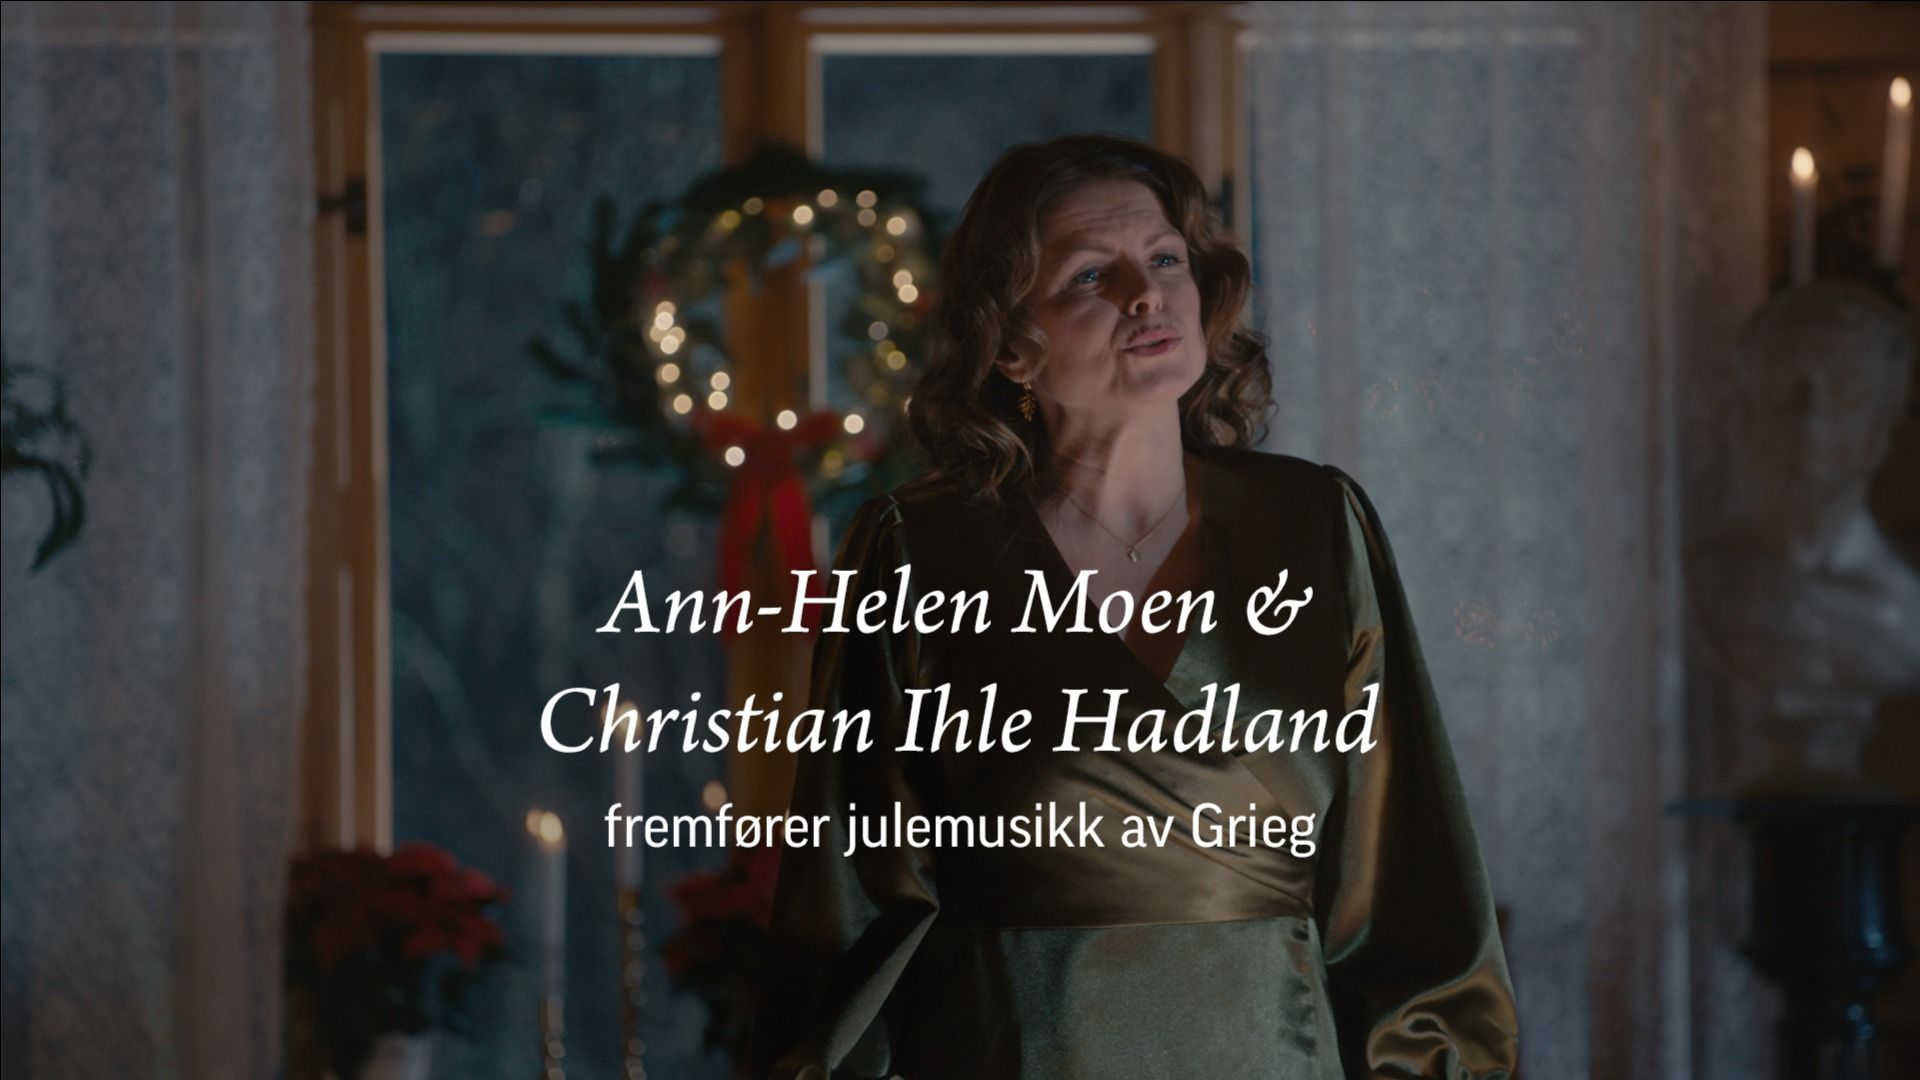 Konsert med Ann-Helen Moen og Christian Ihle Hadland